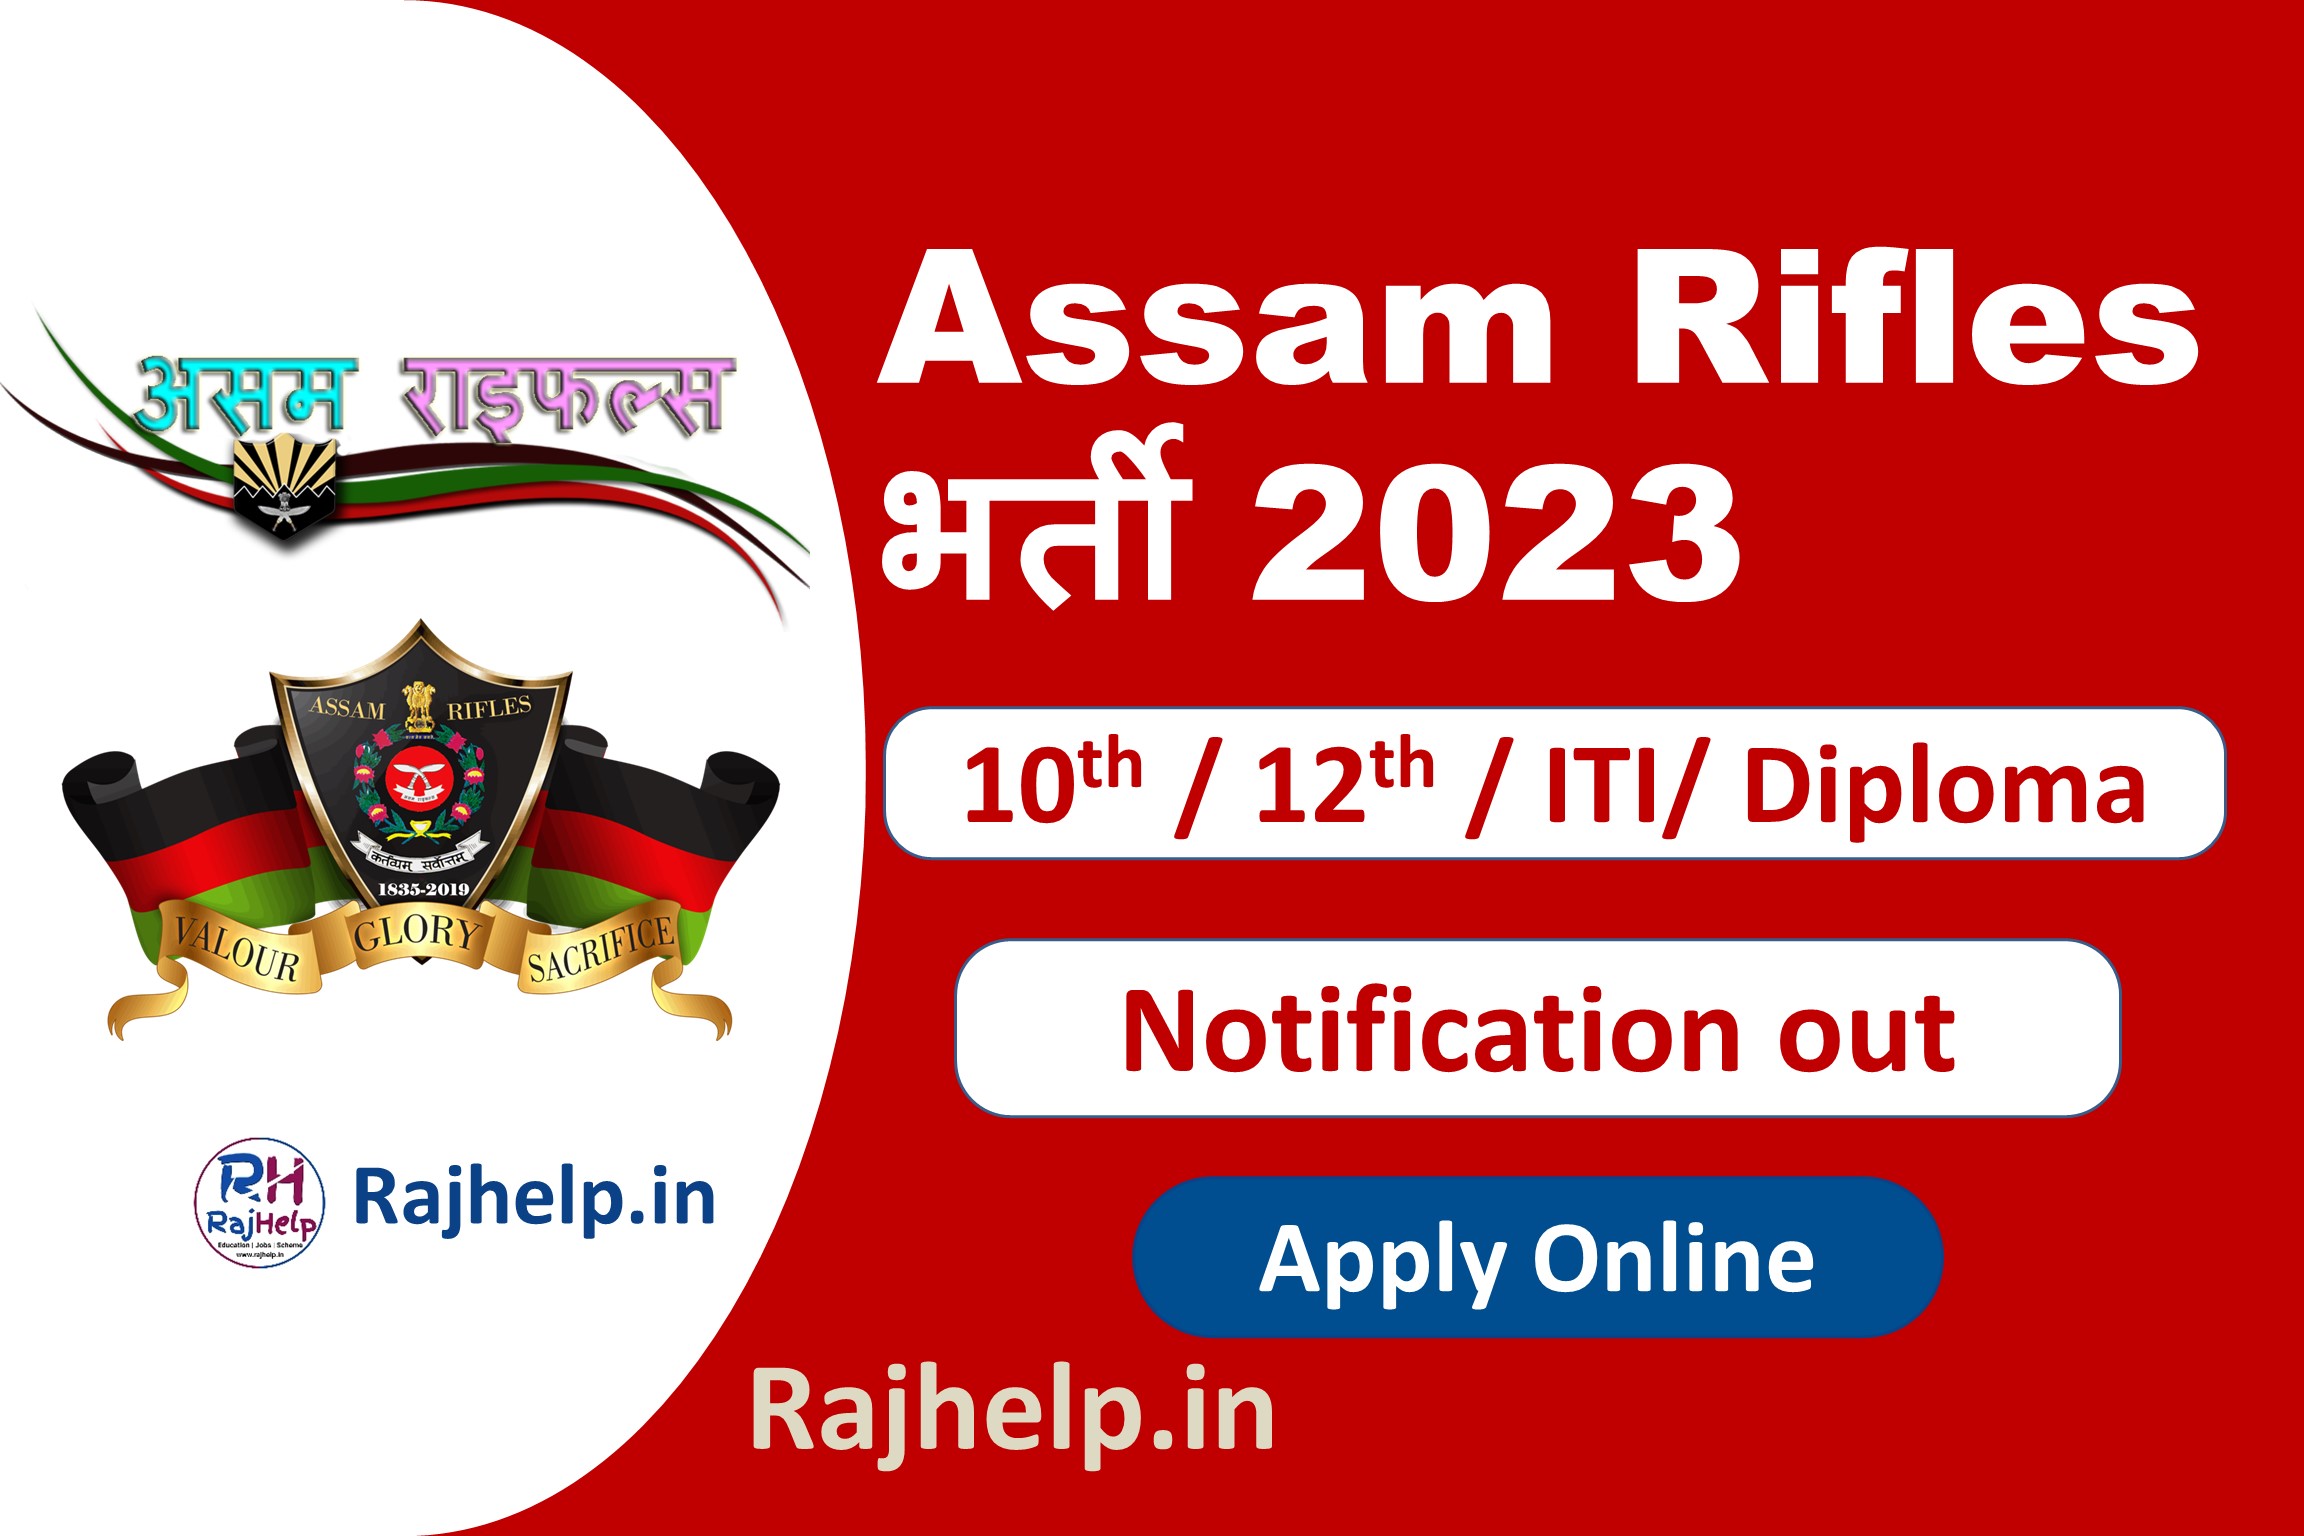 Assan Rifles Recruitment